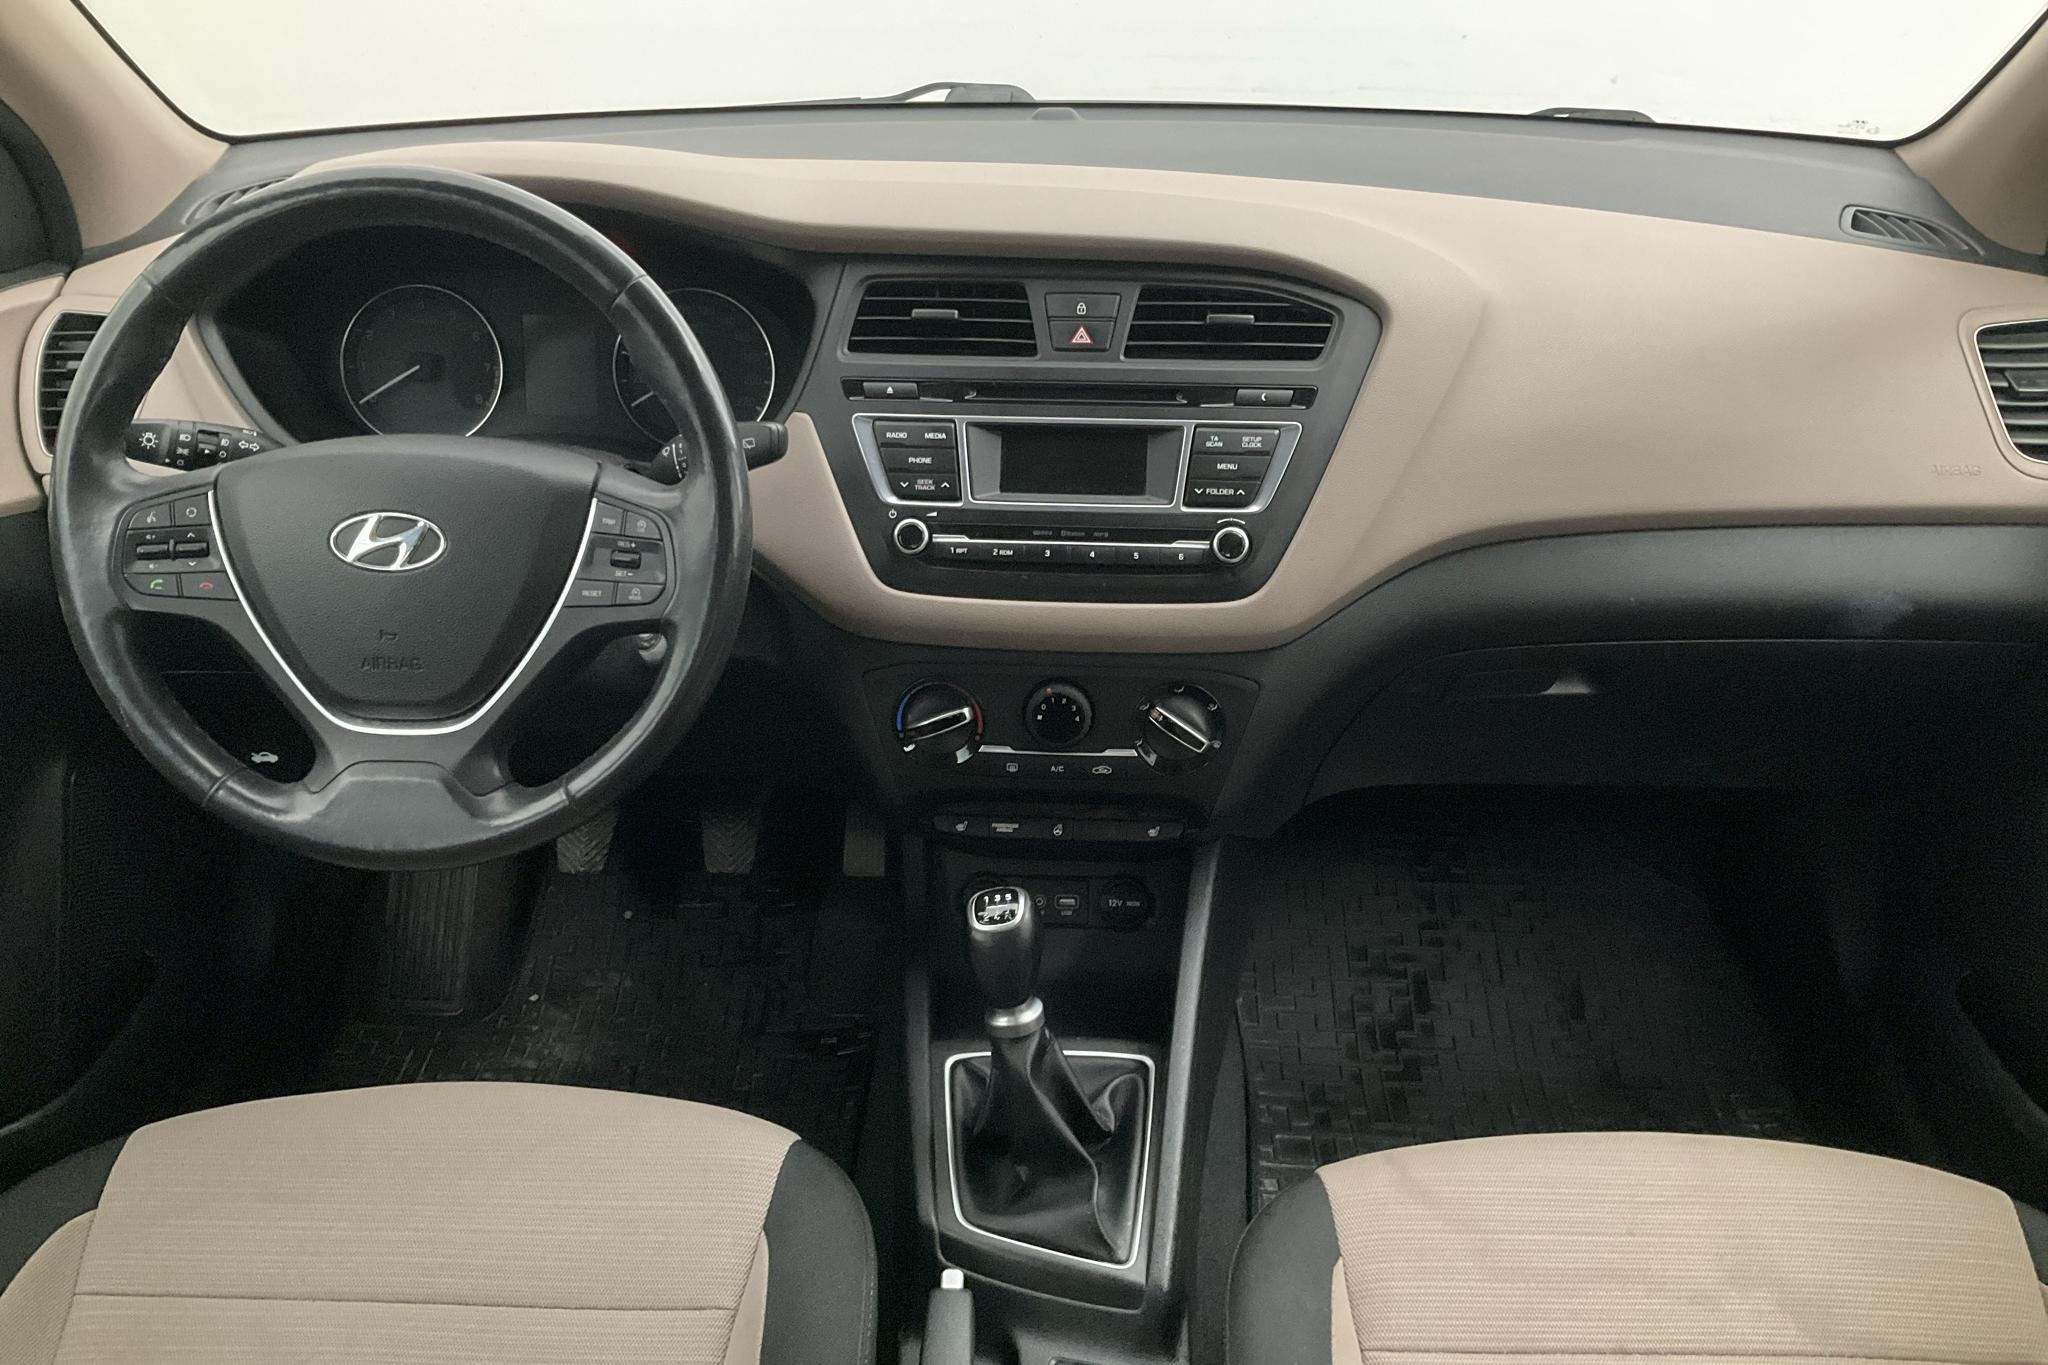 Hyundai i20 1.2 (84hk) - 7 432 mil - Manuell - Dark Grey - 2016